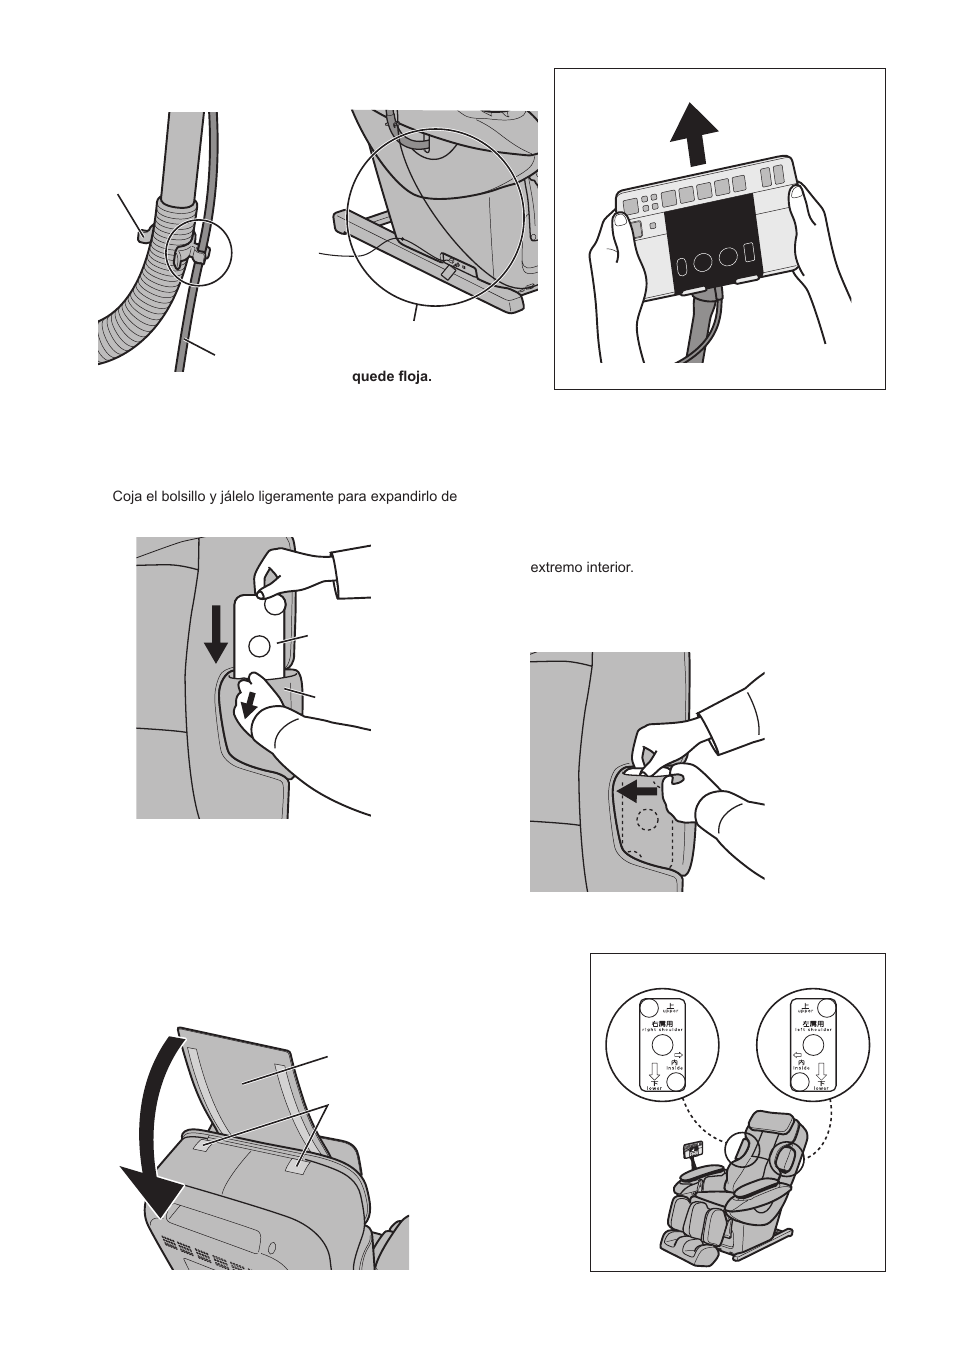 Instalación de la almohada, Inserción de la placa para el hombro | Panasonic EP30007 Manual del usuario | Página 18 / 54